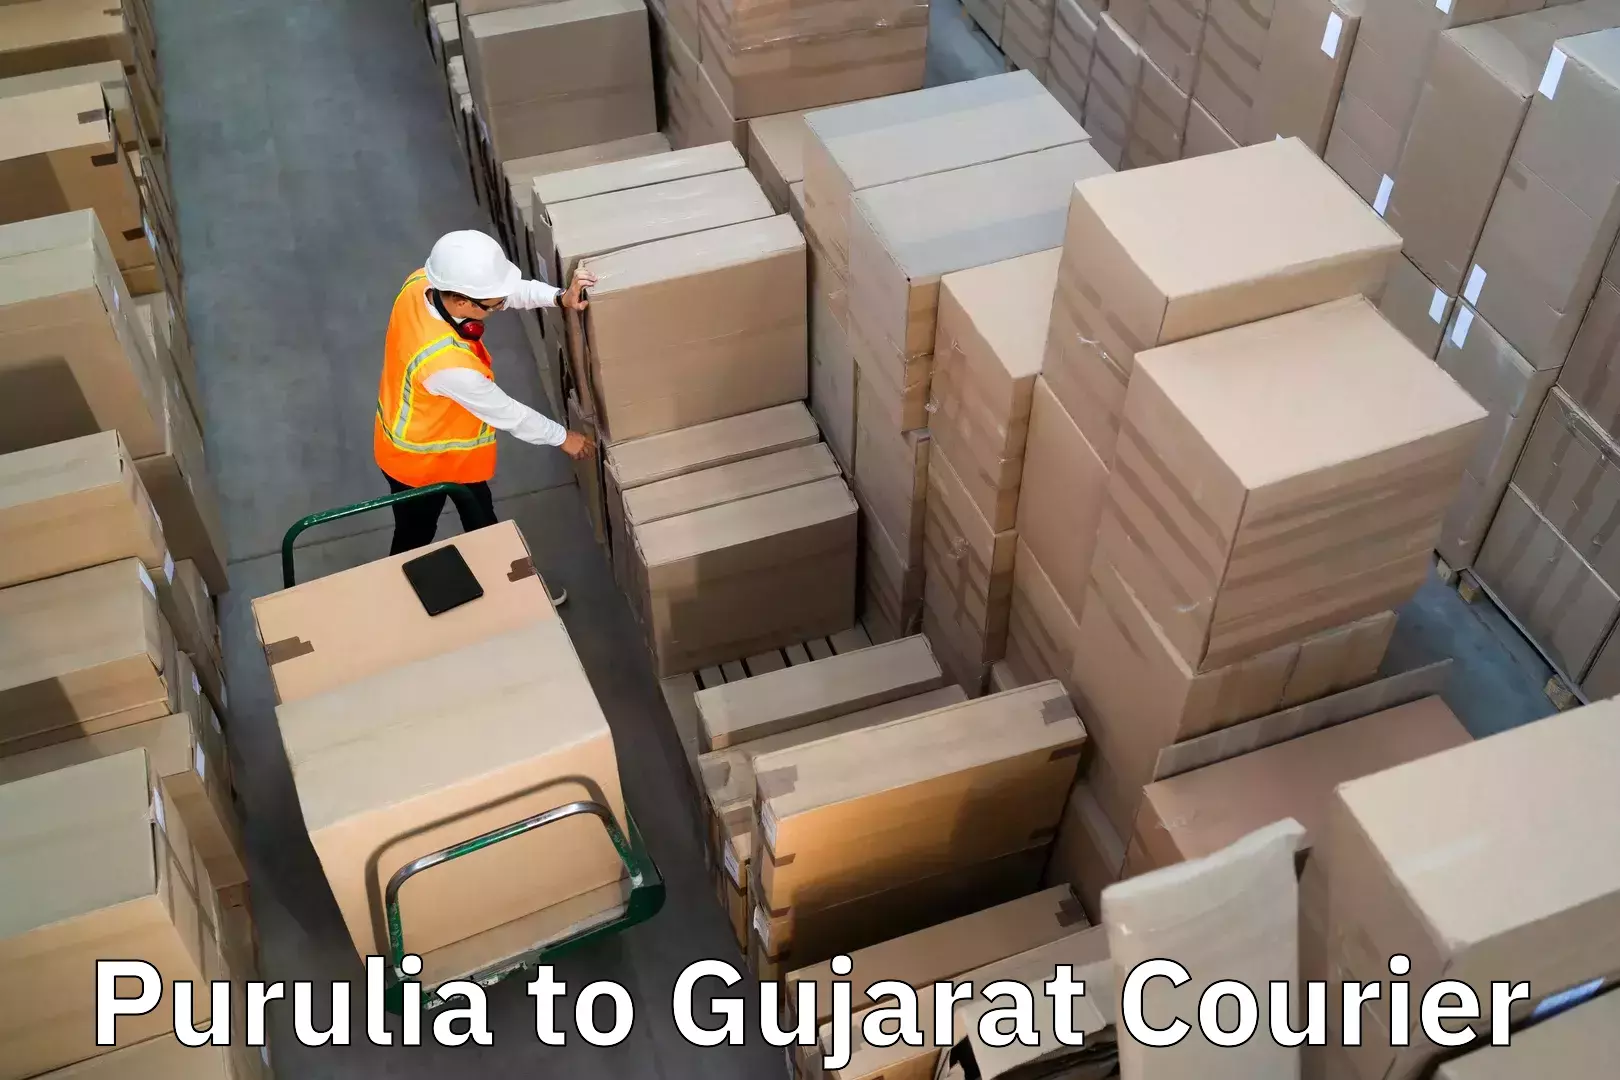 Door-to-door baggage service Purulia to IIIT Surat